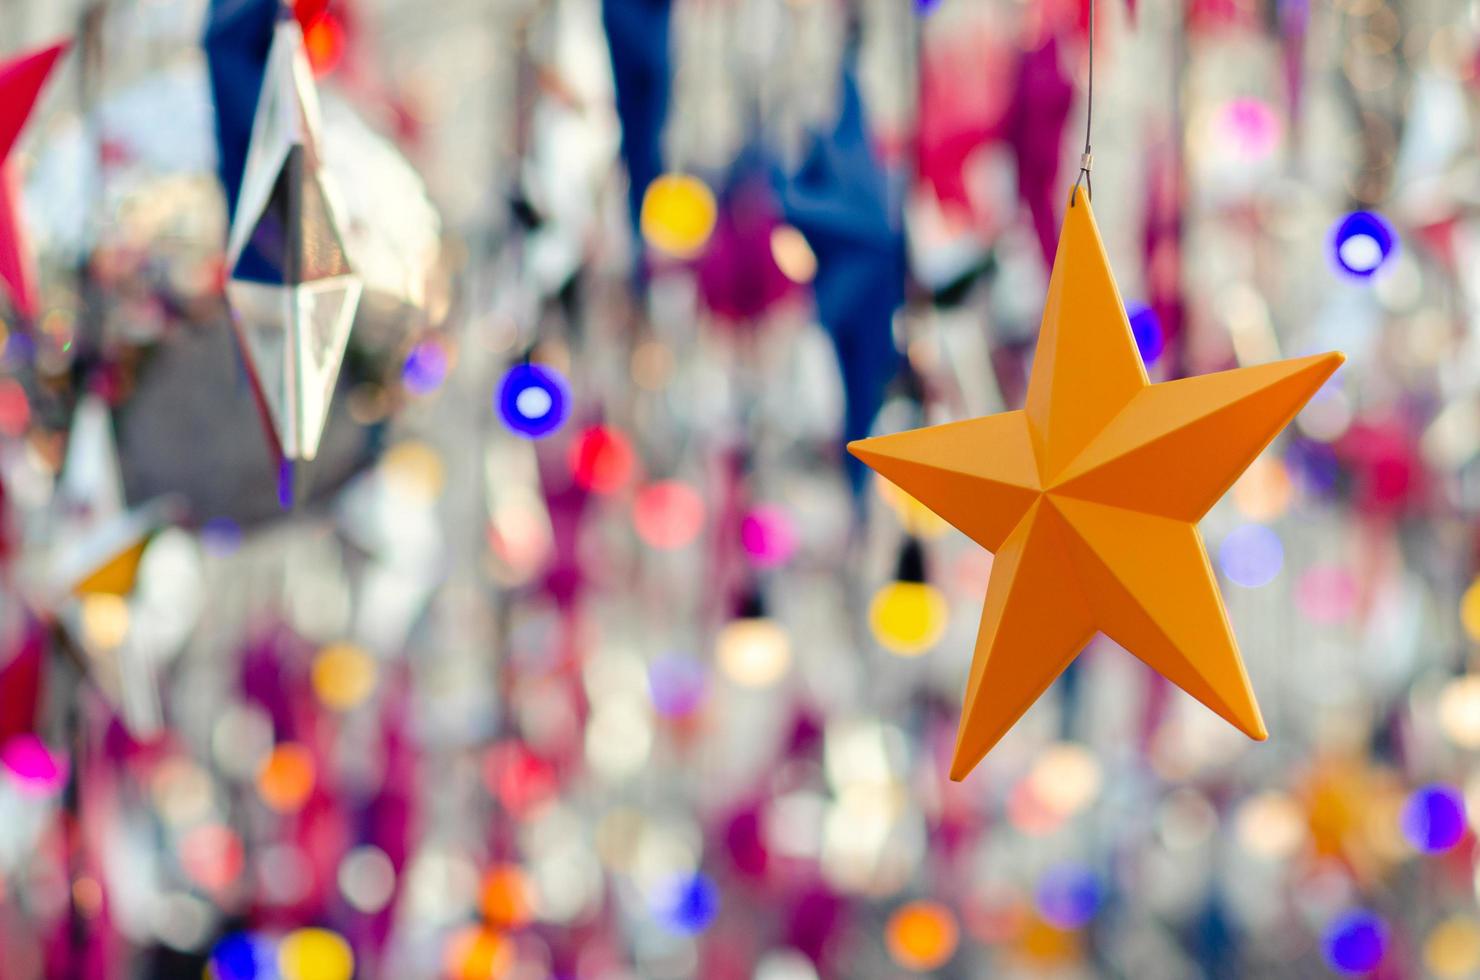 kleurrijk ster ornamenten hangende naar versieren voor Kerstmis vakantie. foto